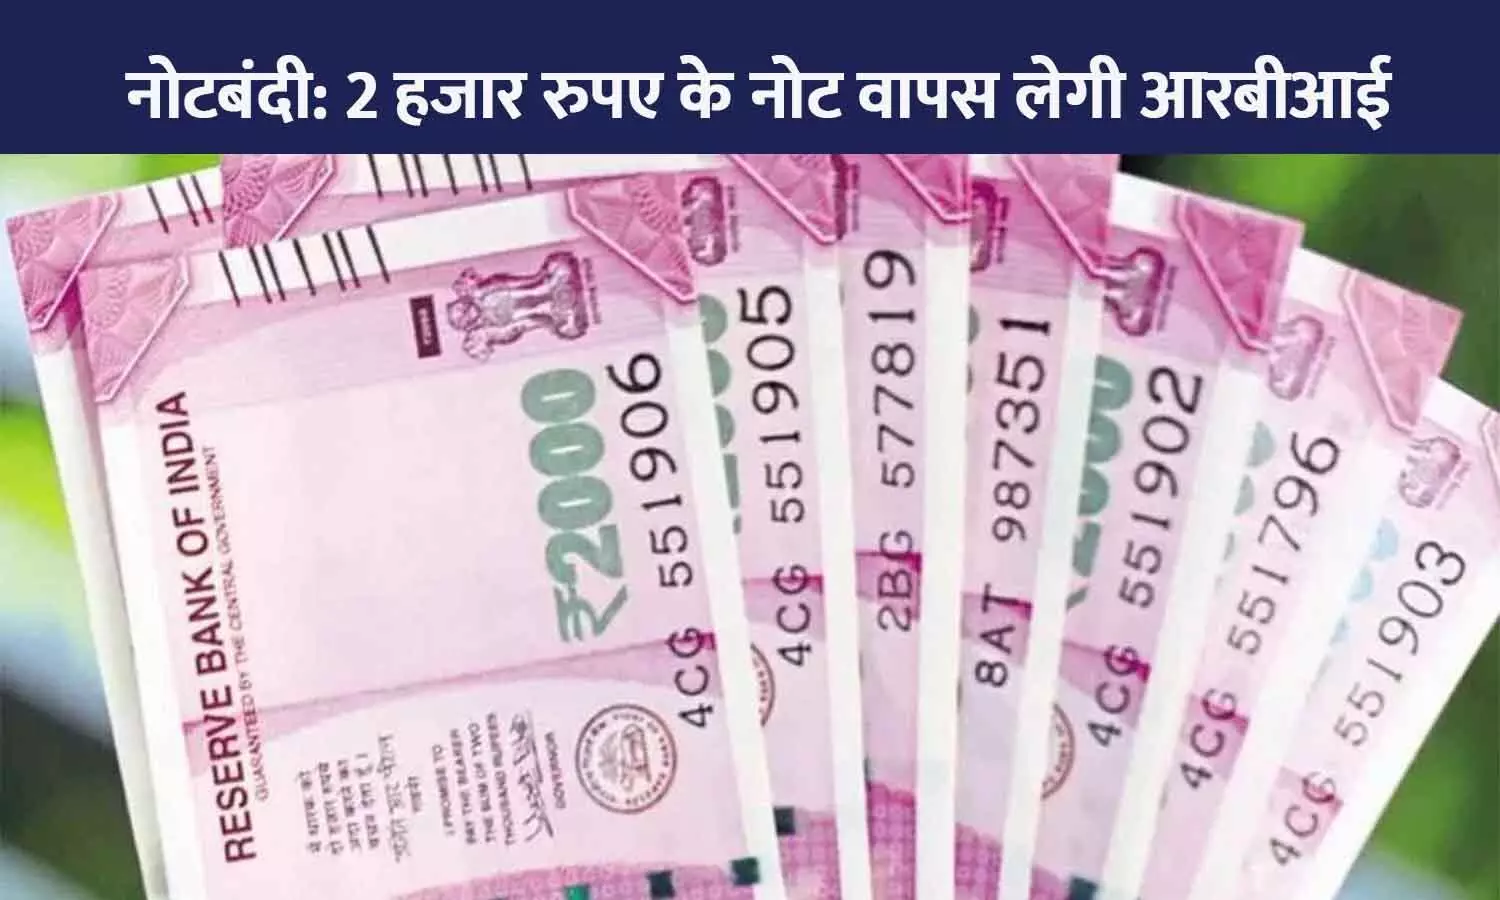 अब ₹ 2000 का नोट सर्कुलेशन से बाहर होगा, 30 सितंबर तक वापस लेगा रिज़र्व बैंक; एक बार में 10 नोट ही बदलवा सकेंगे